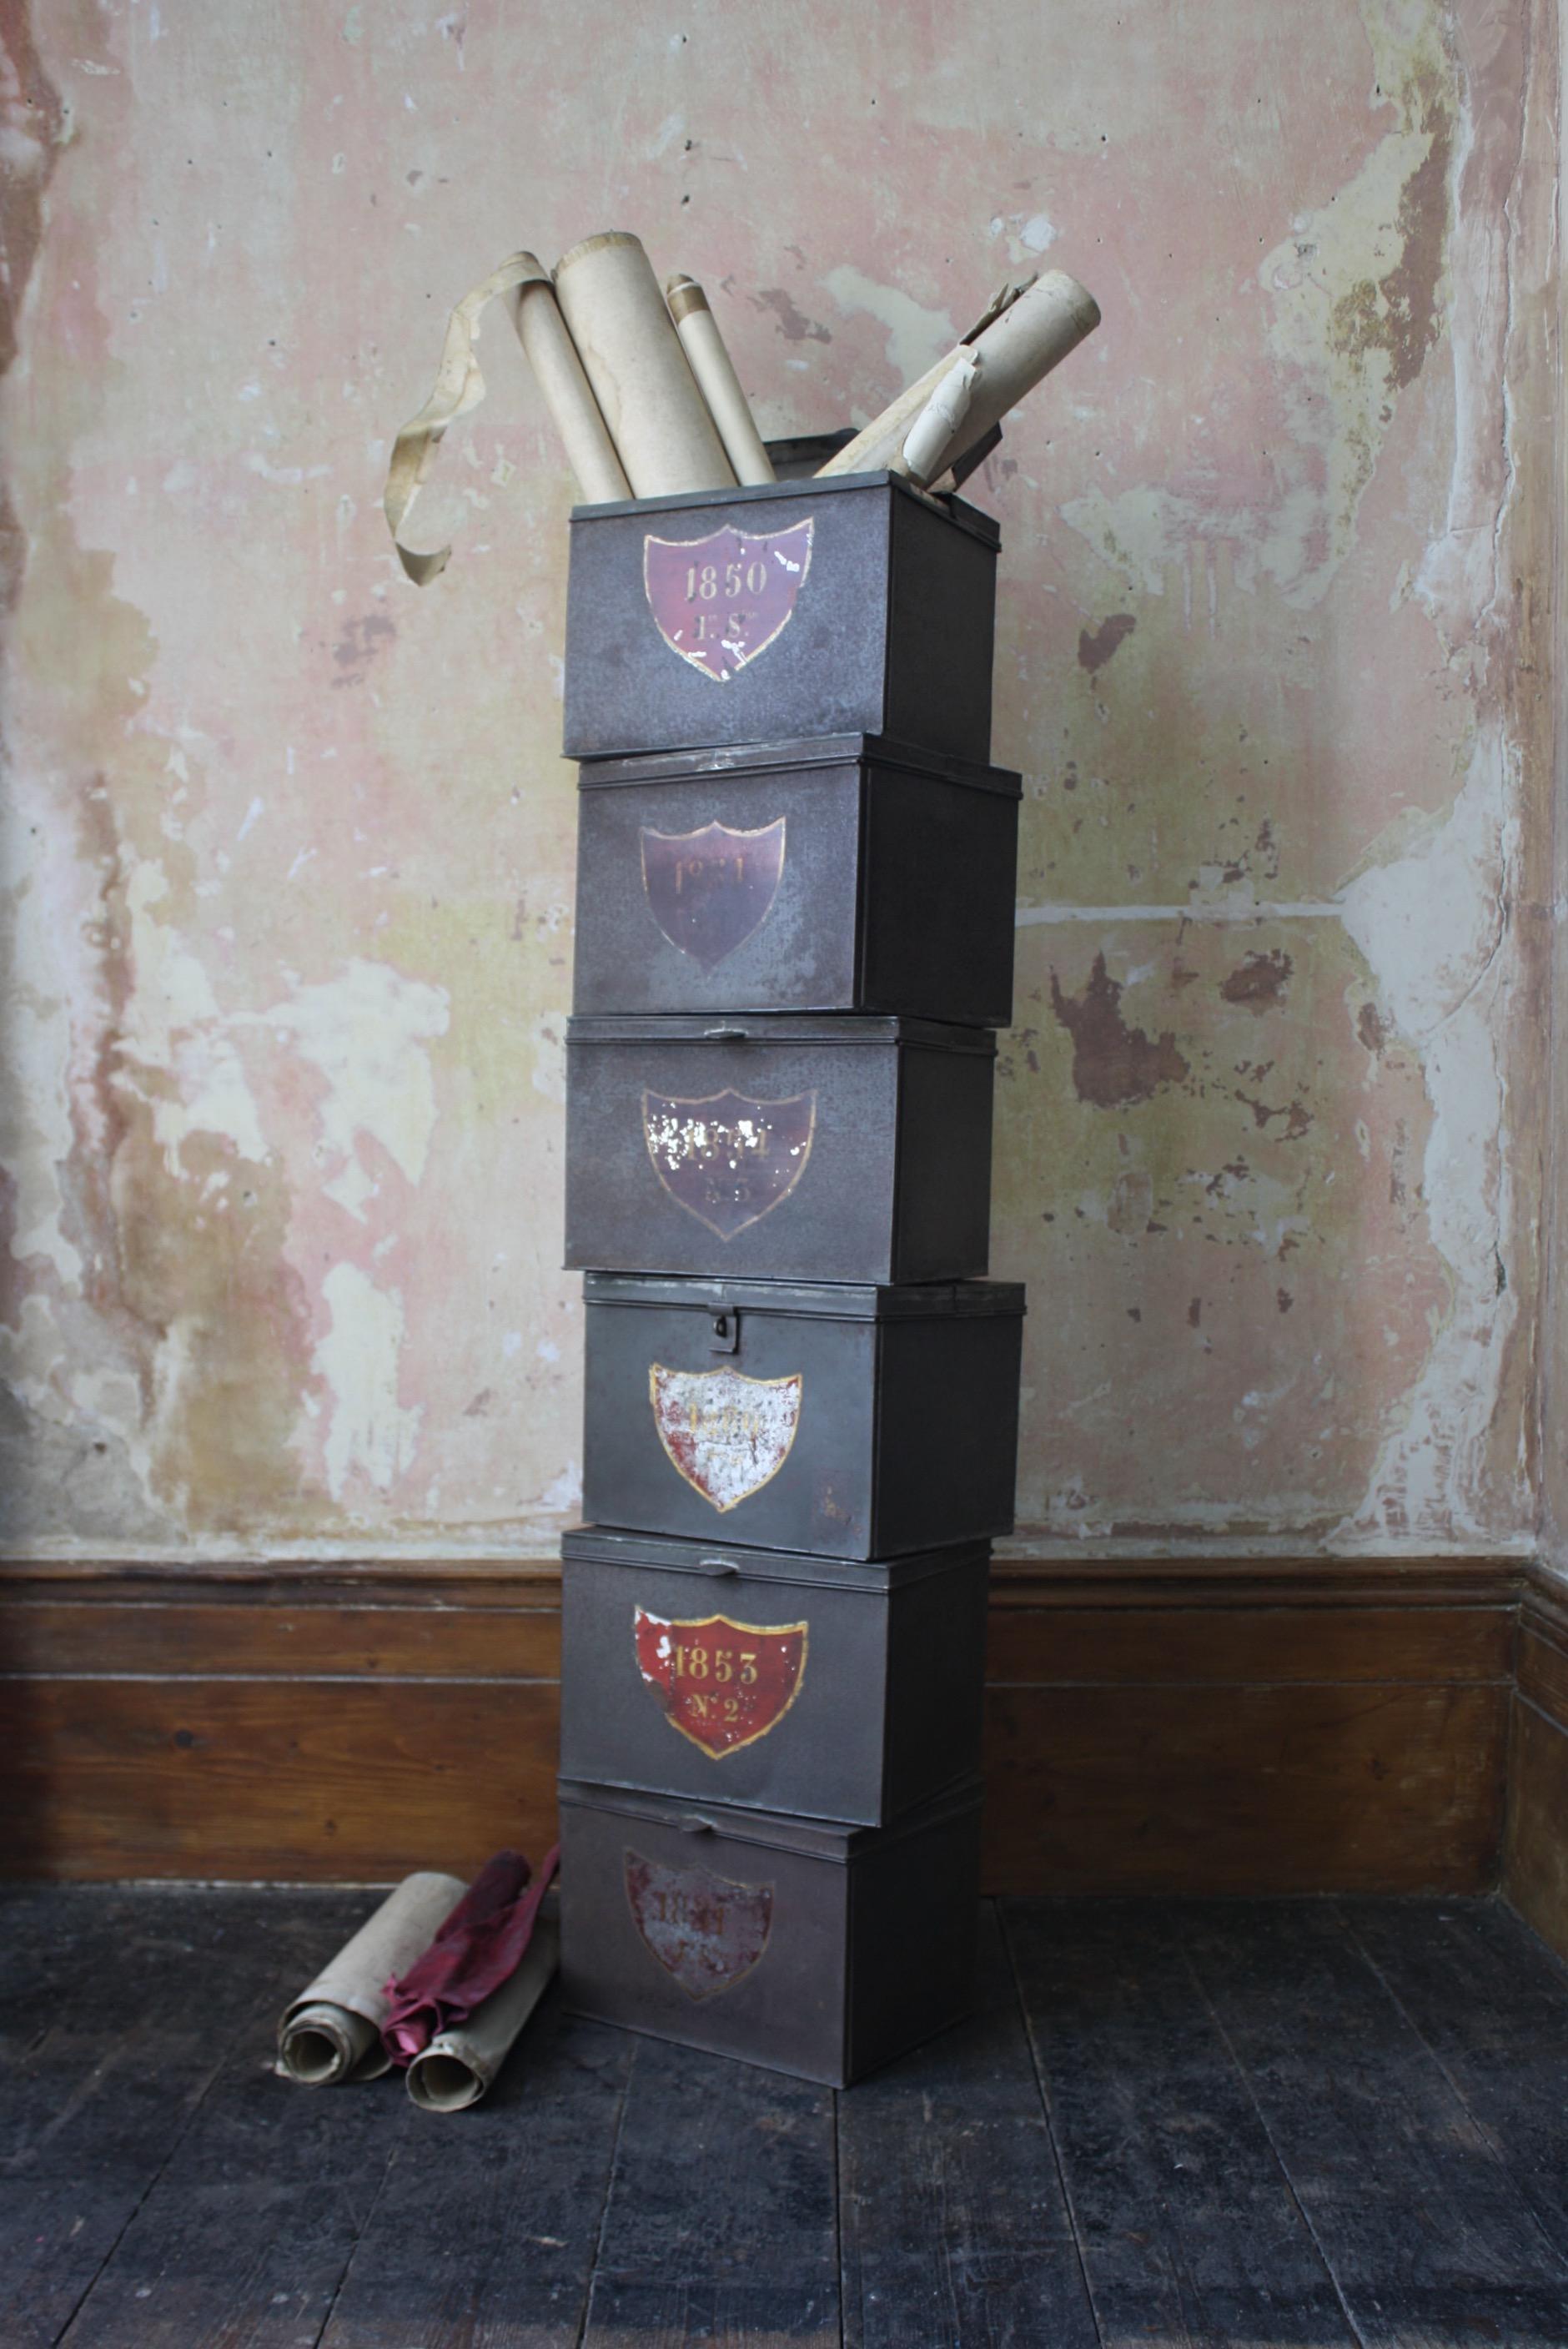 Sammlung von sechs Dokumentenboxen aus Stahlblech und mit Scharnieren, mit dekorativen Schilden im Schweizer Stil, handbemalt mit Daten und Nummern.

Datiert auf die Jahre 1850 bis 1860 mit unterschiedlichen Gebrauchsspuren an der Bemalung, sehr